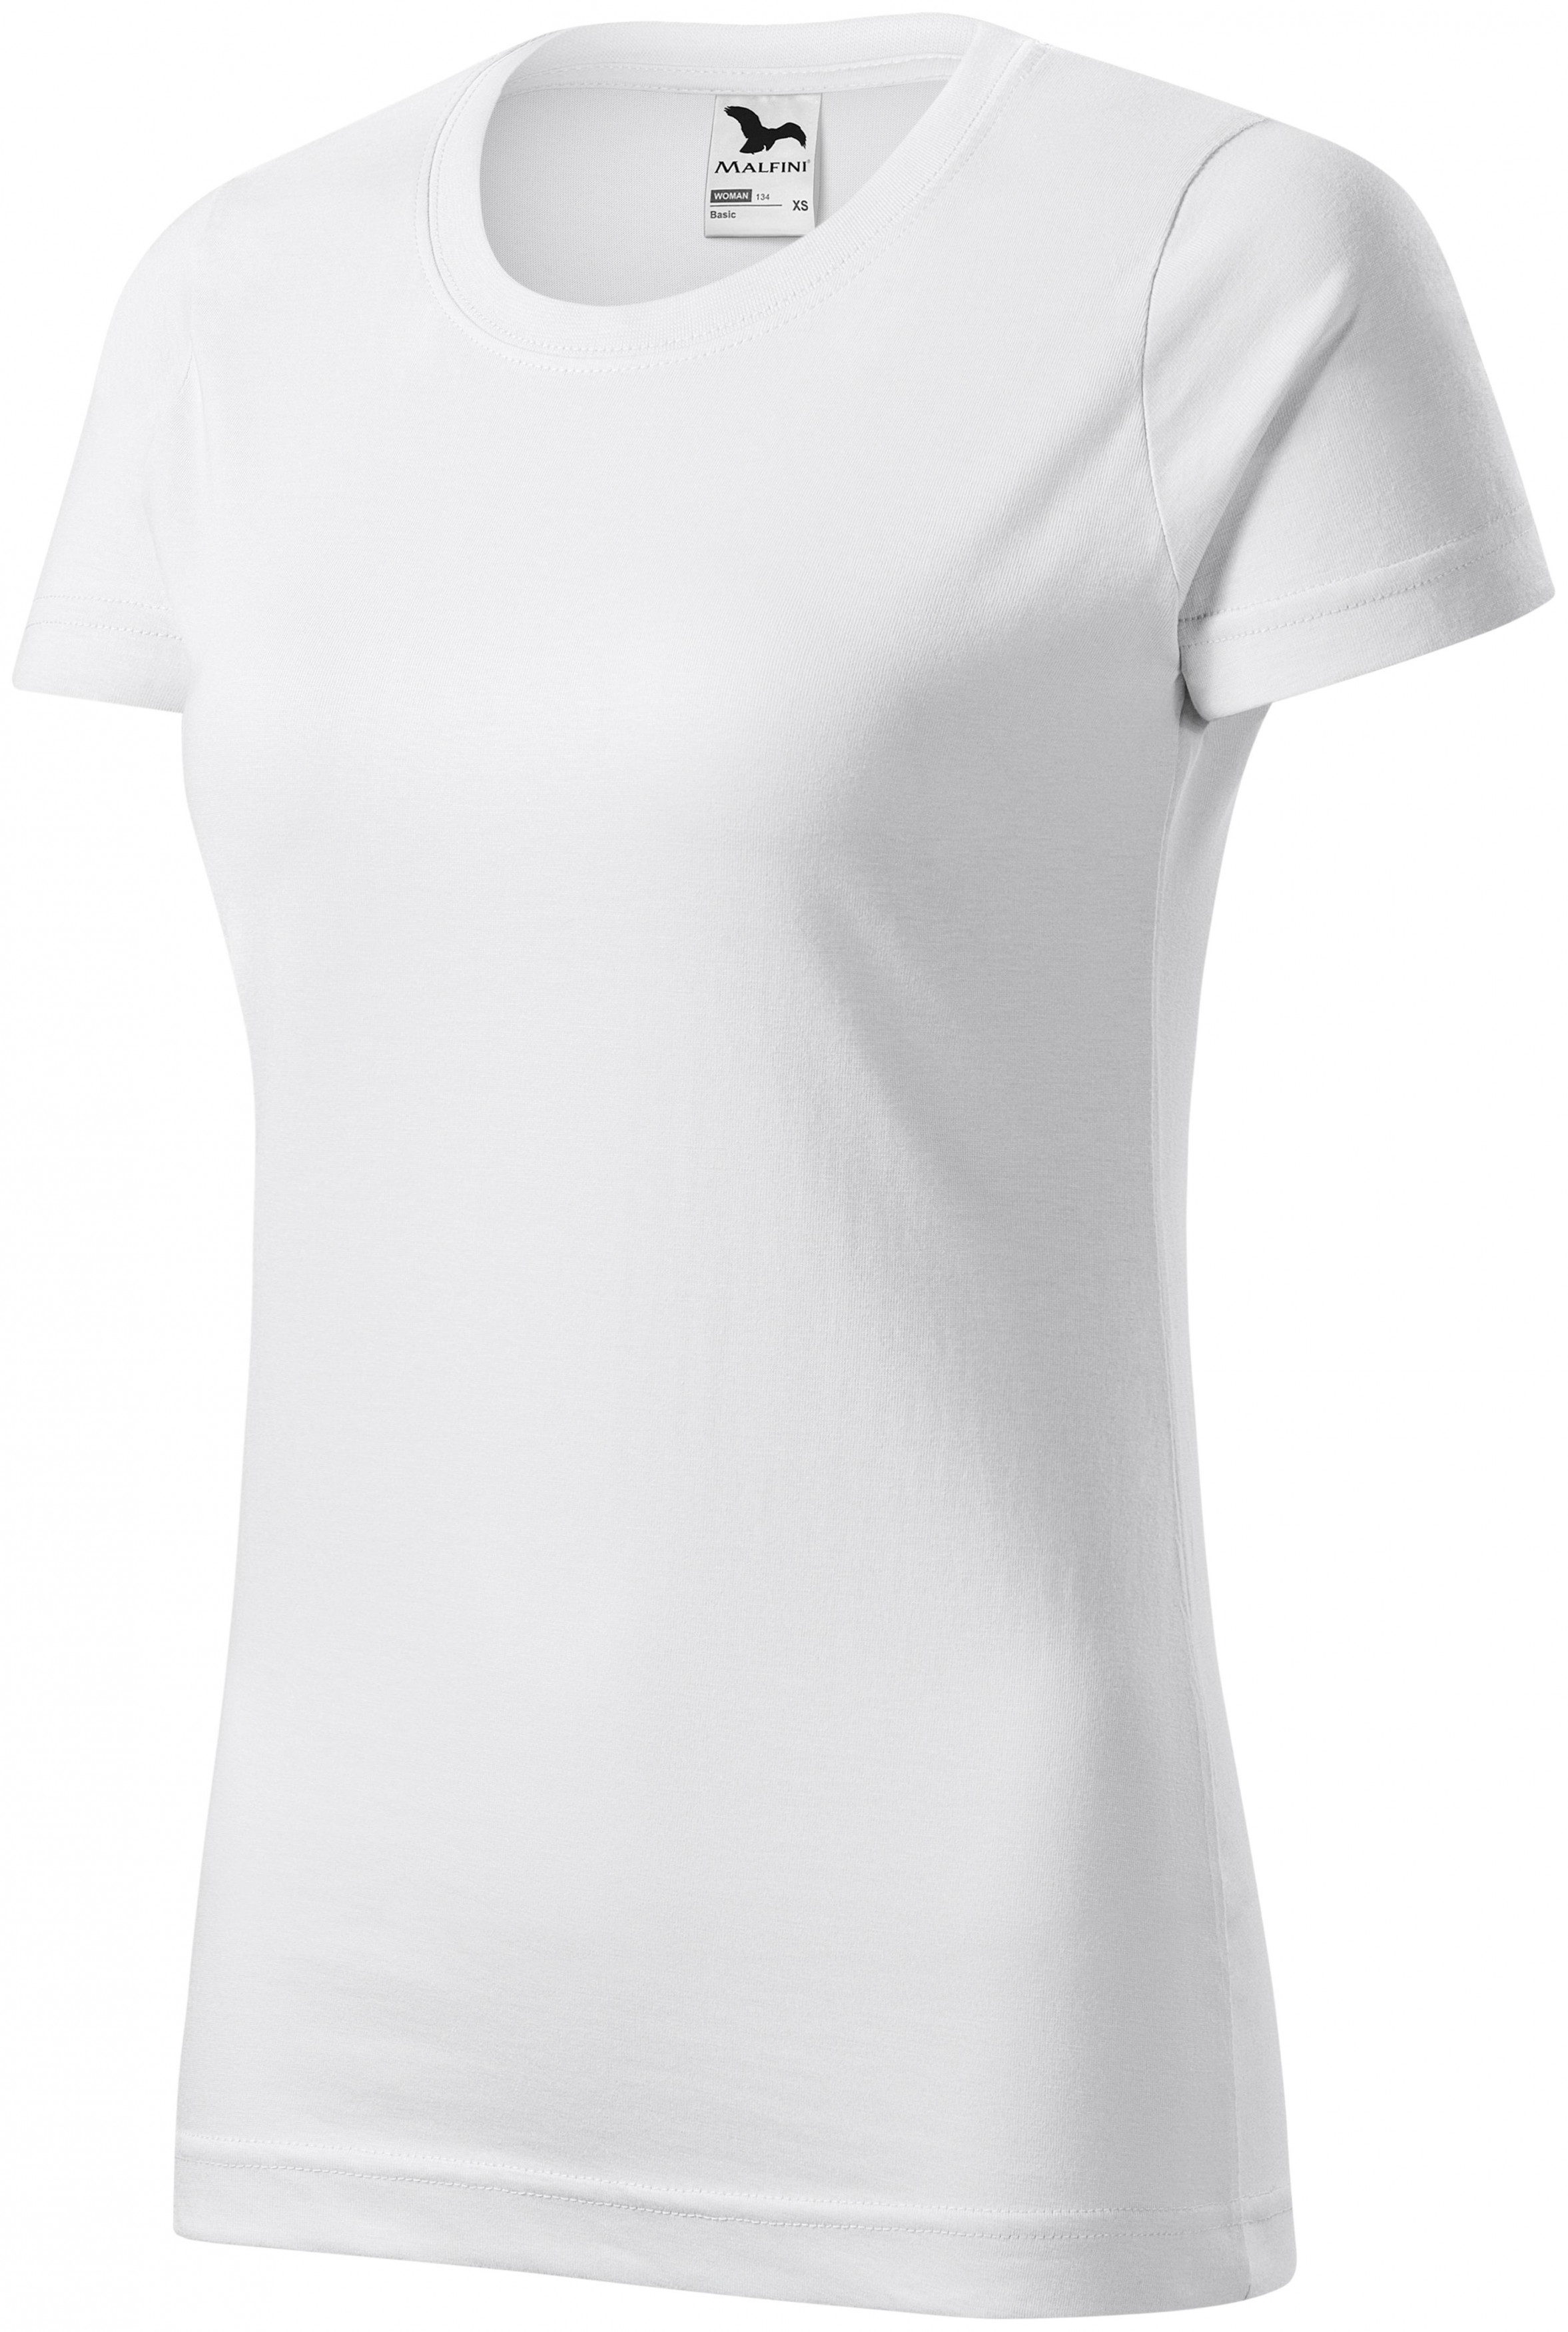 Dámske tričko jednoduché, biela, 3XL